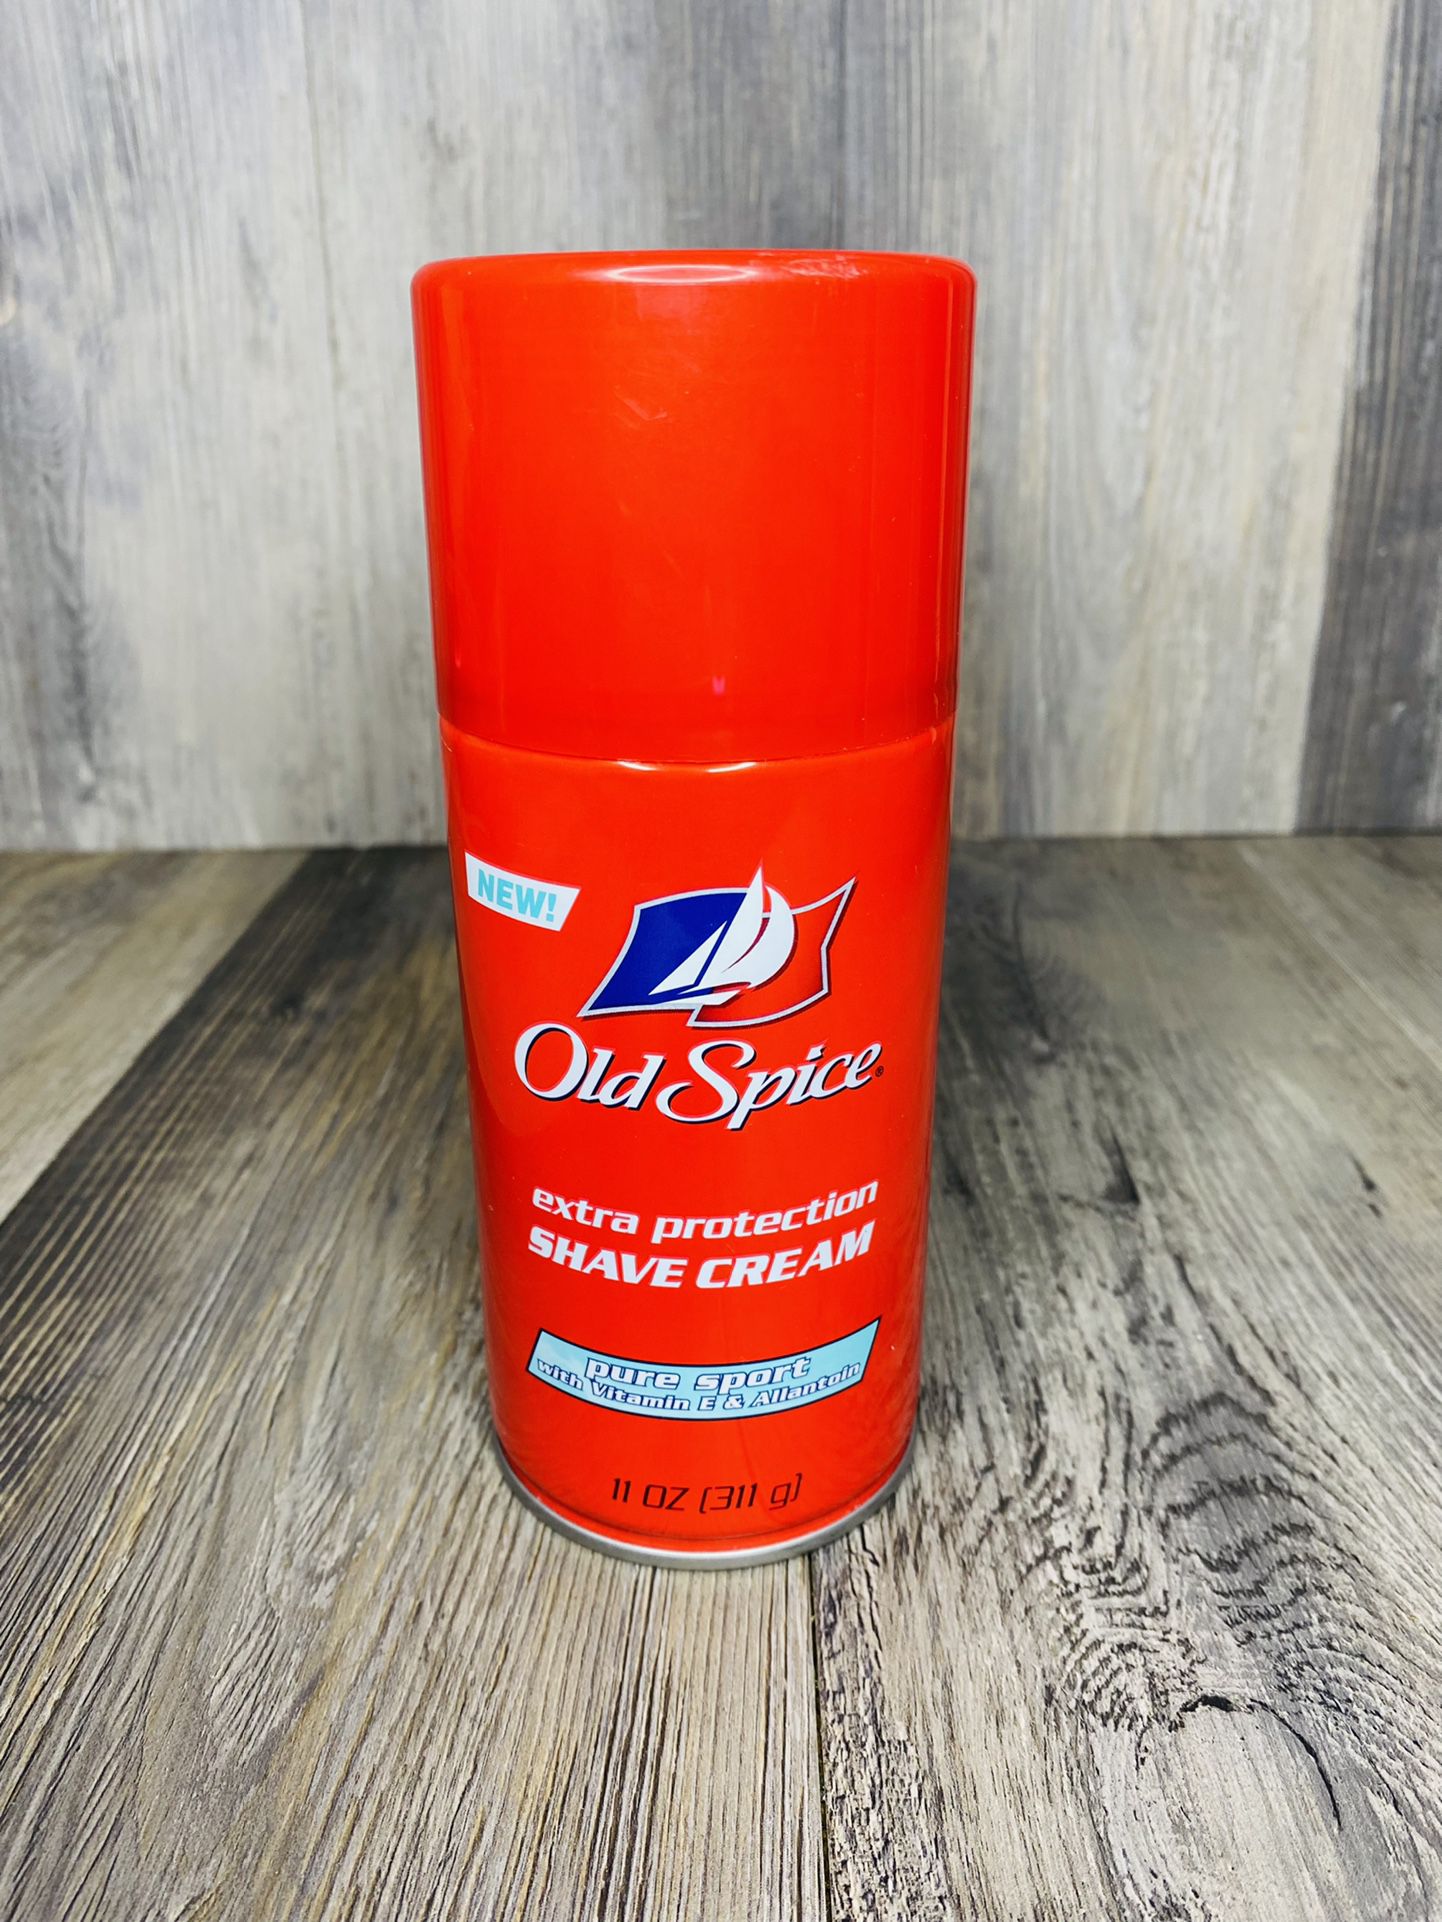 Old Spice Pure Sport Shave Cream 11oz With Vitamin E Allantoin NOS